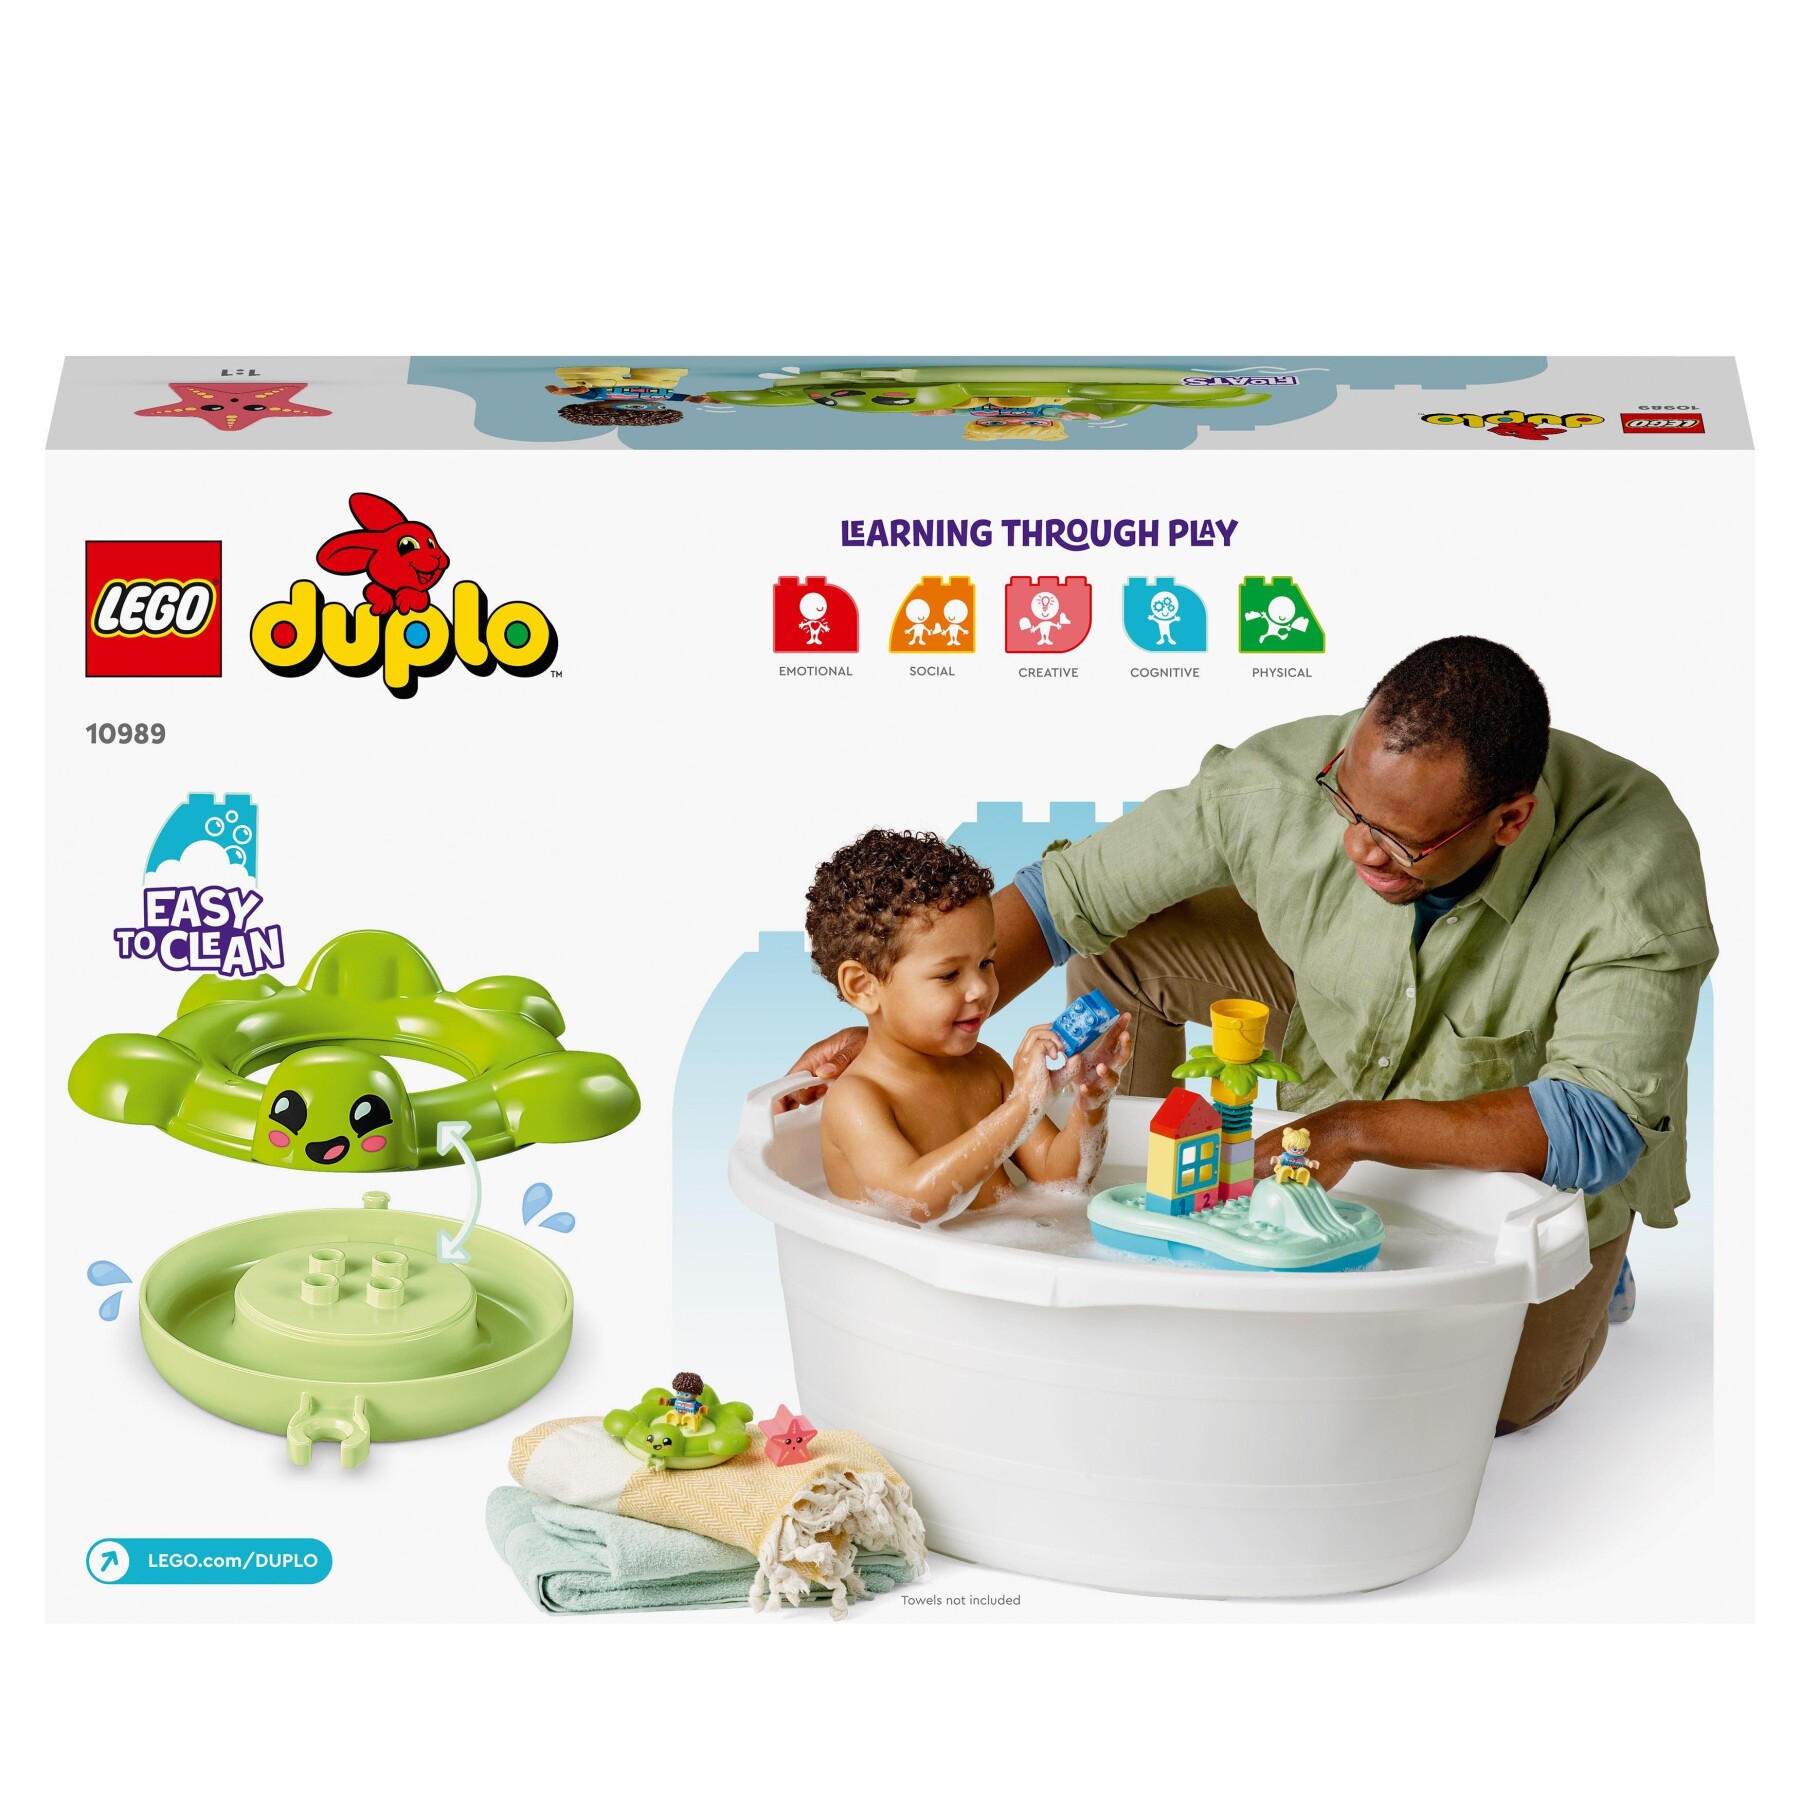 Lego duplo 10989 parco acquatico, giochi da bagnetto per bambini da 2+ anni con isola galleggiante, tartaruga e stella marina - LEGO DUPLO